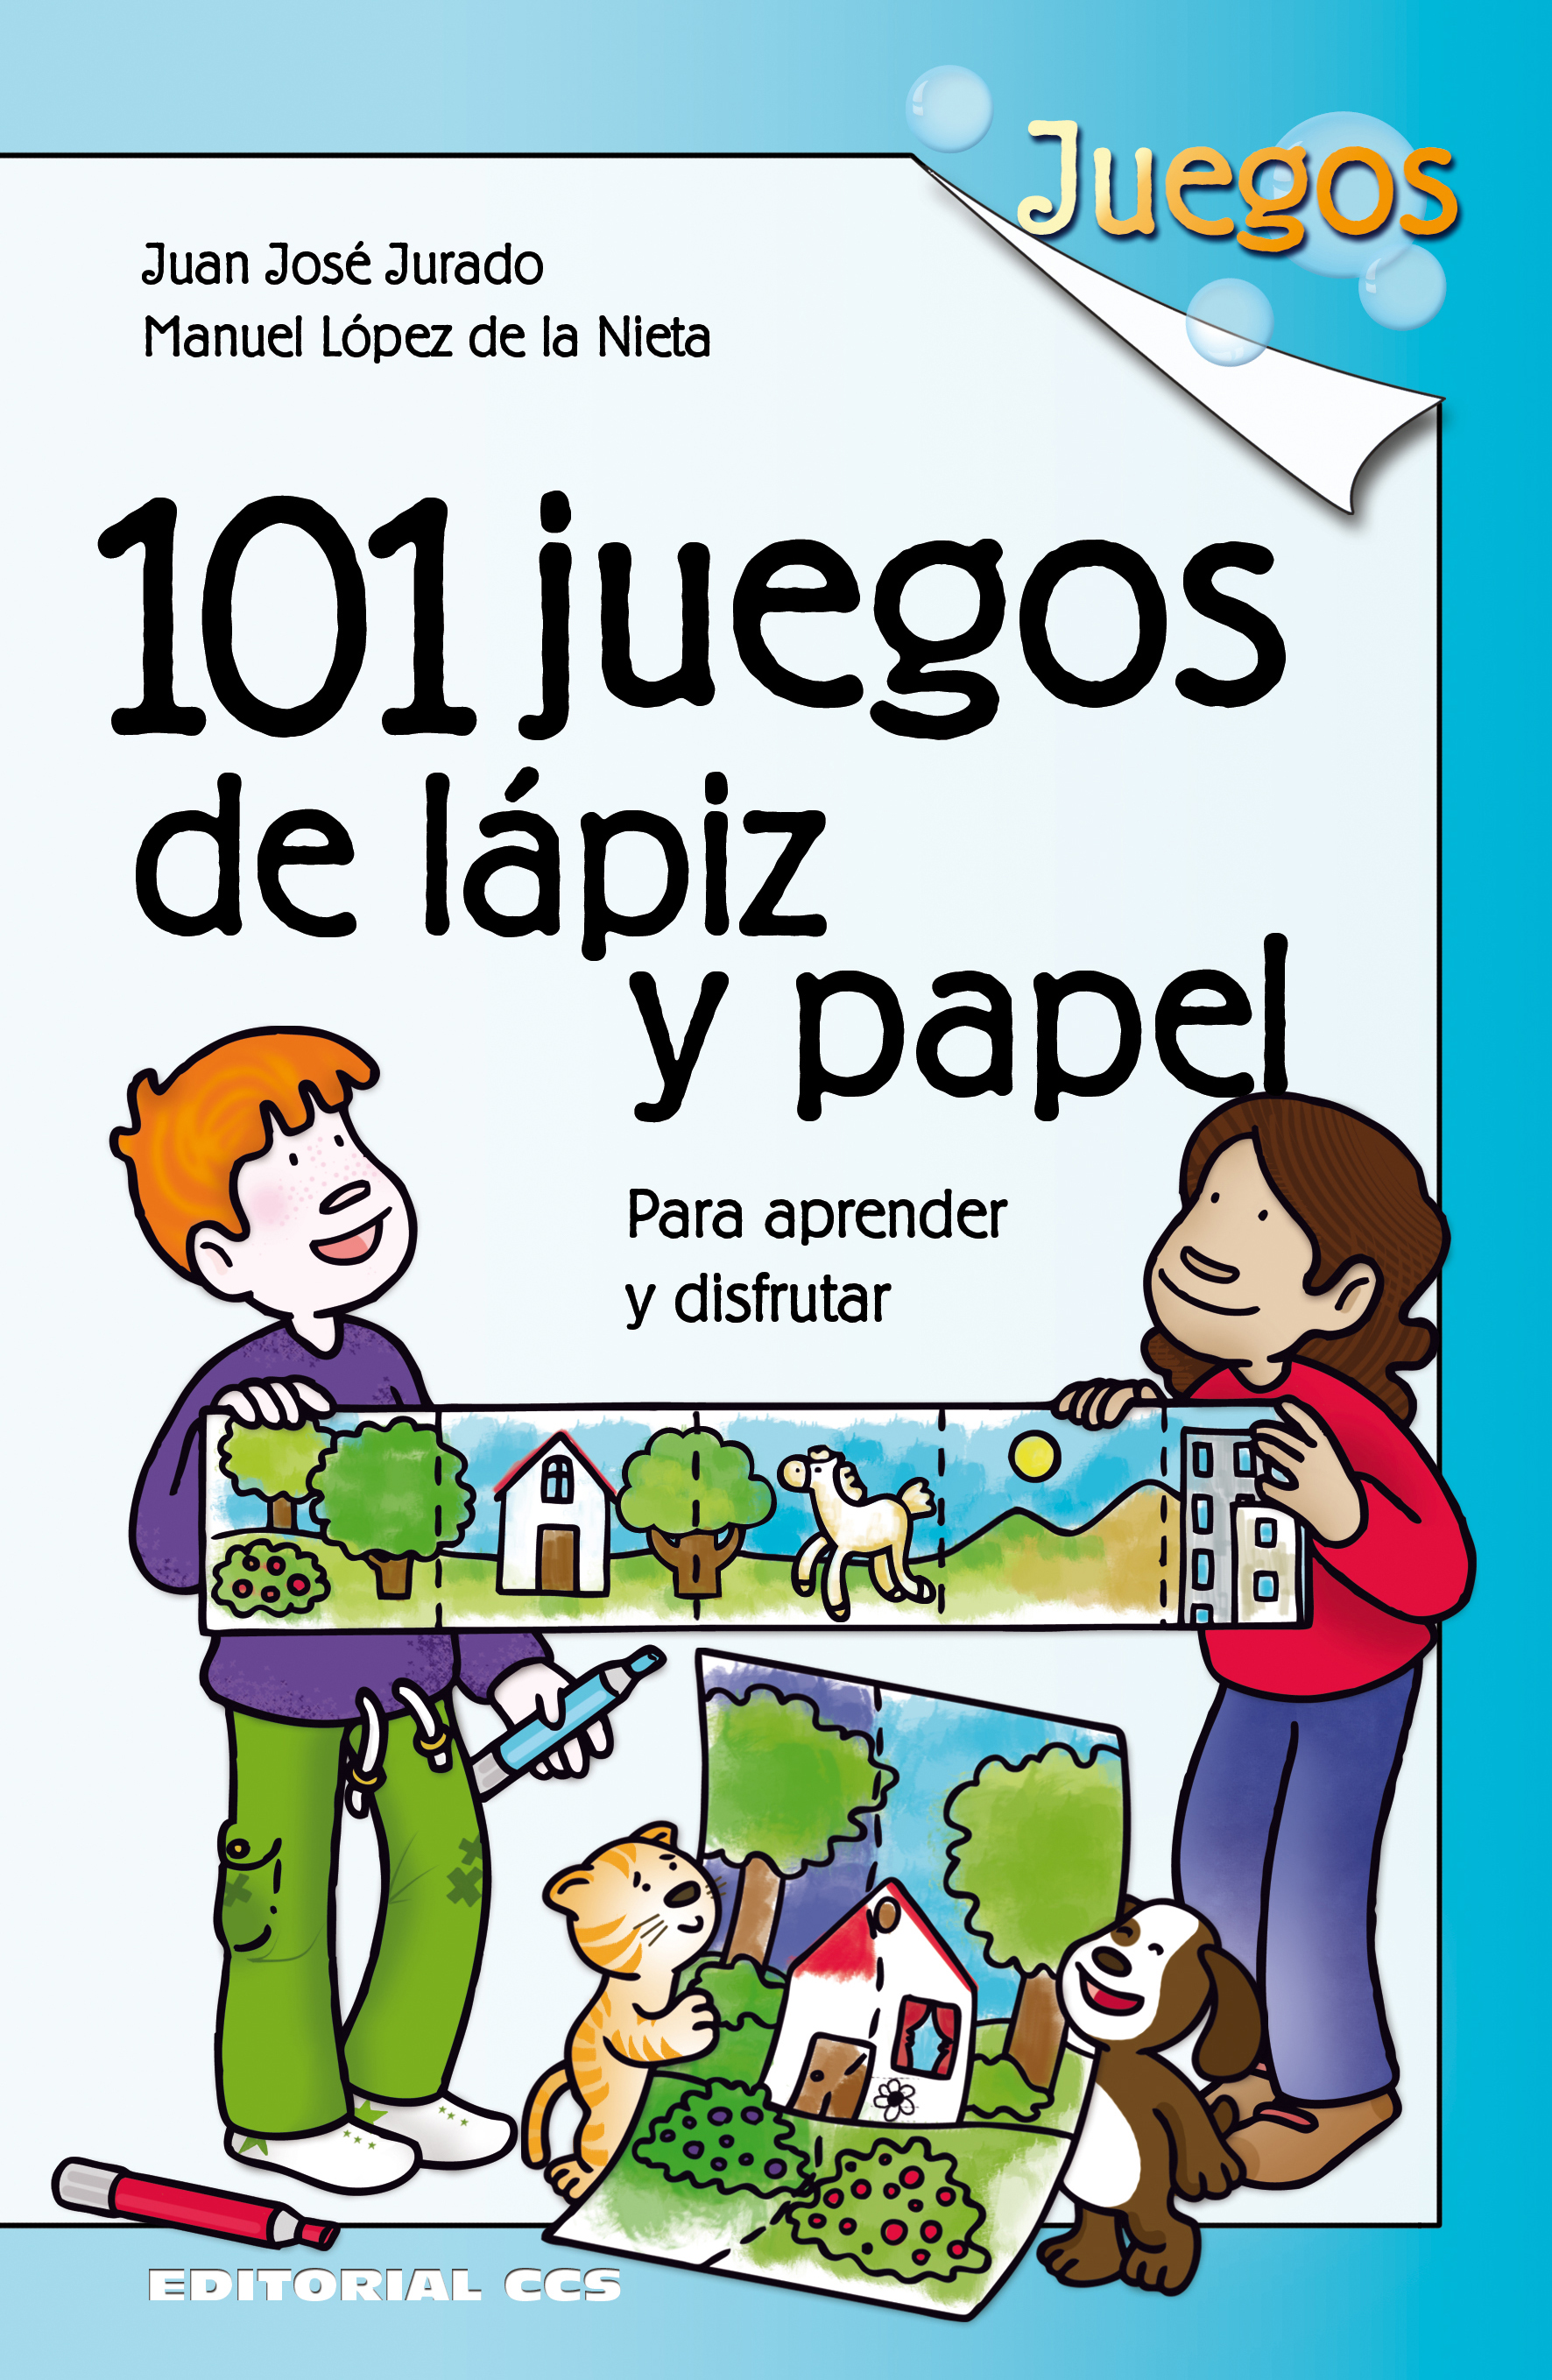 Editorial CCS Libro: JUEGOS DE LÁPIZ Y PAPEL